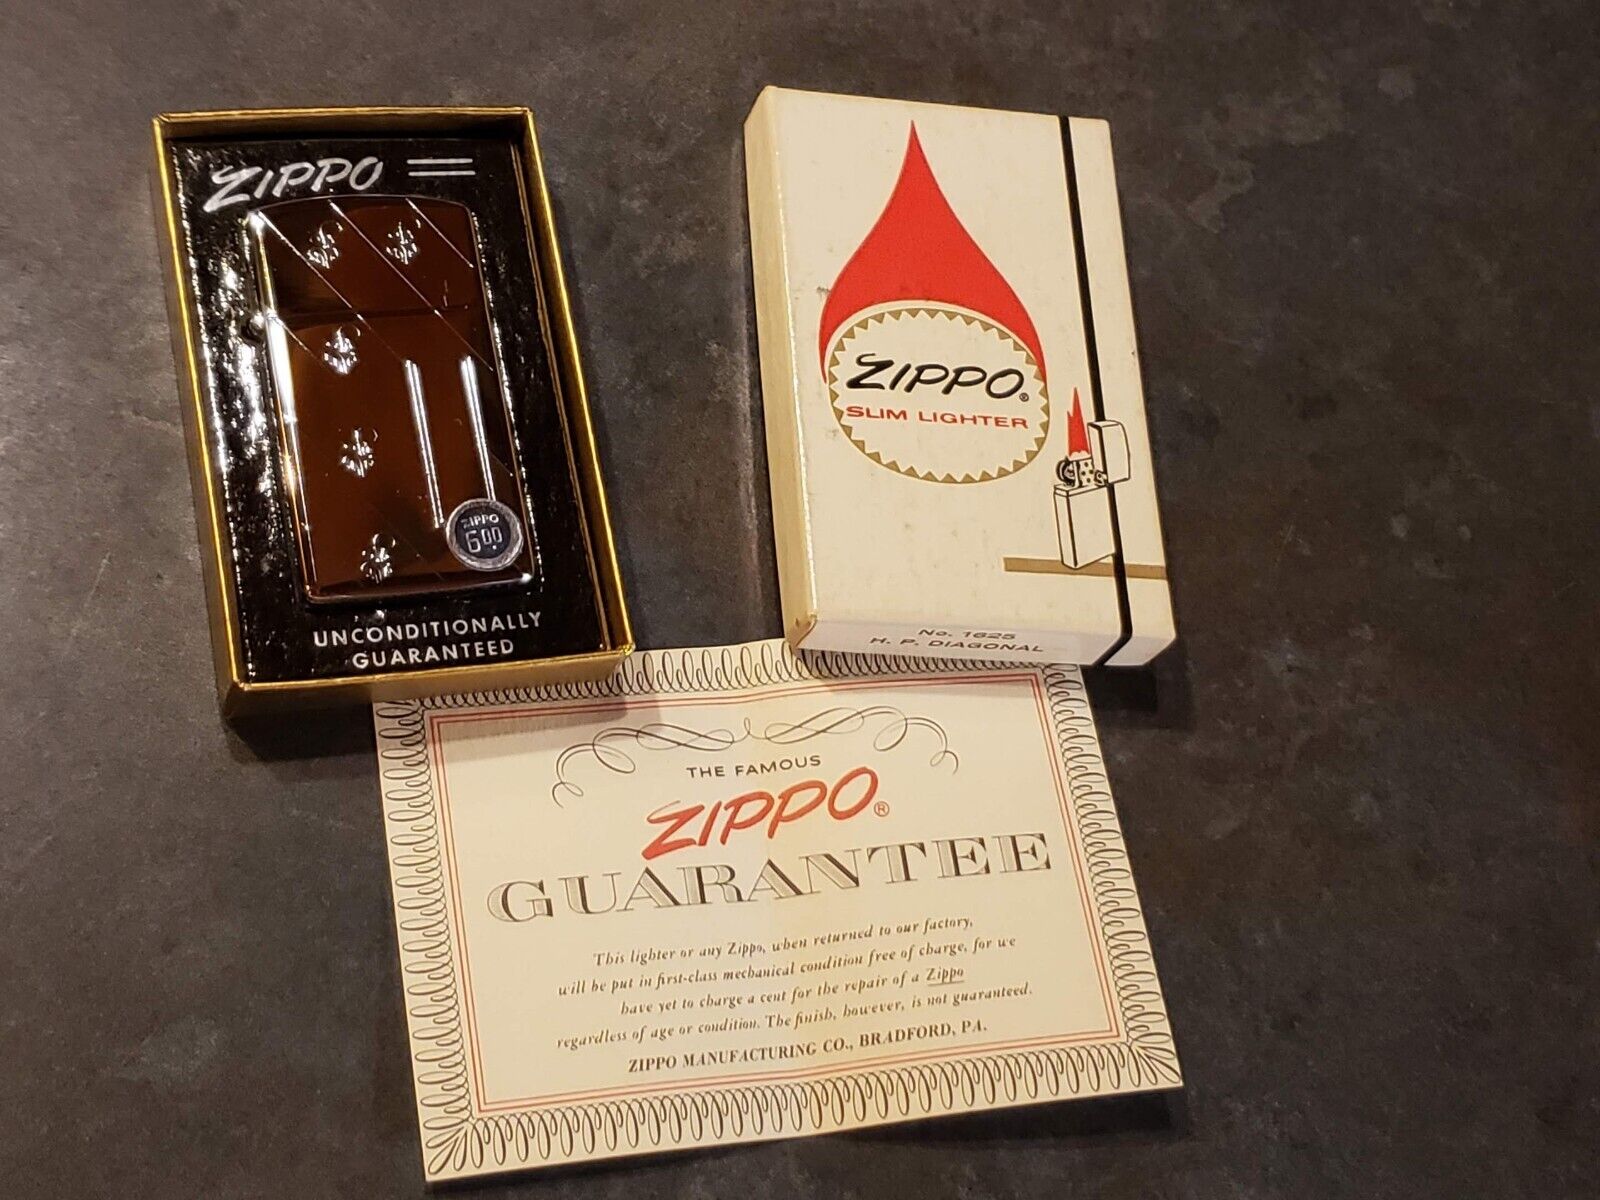 Zippo Slim Lighter – new in box.